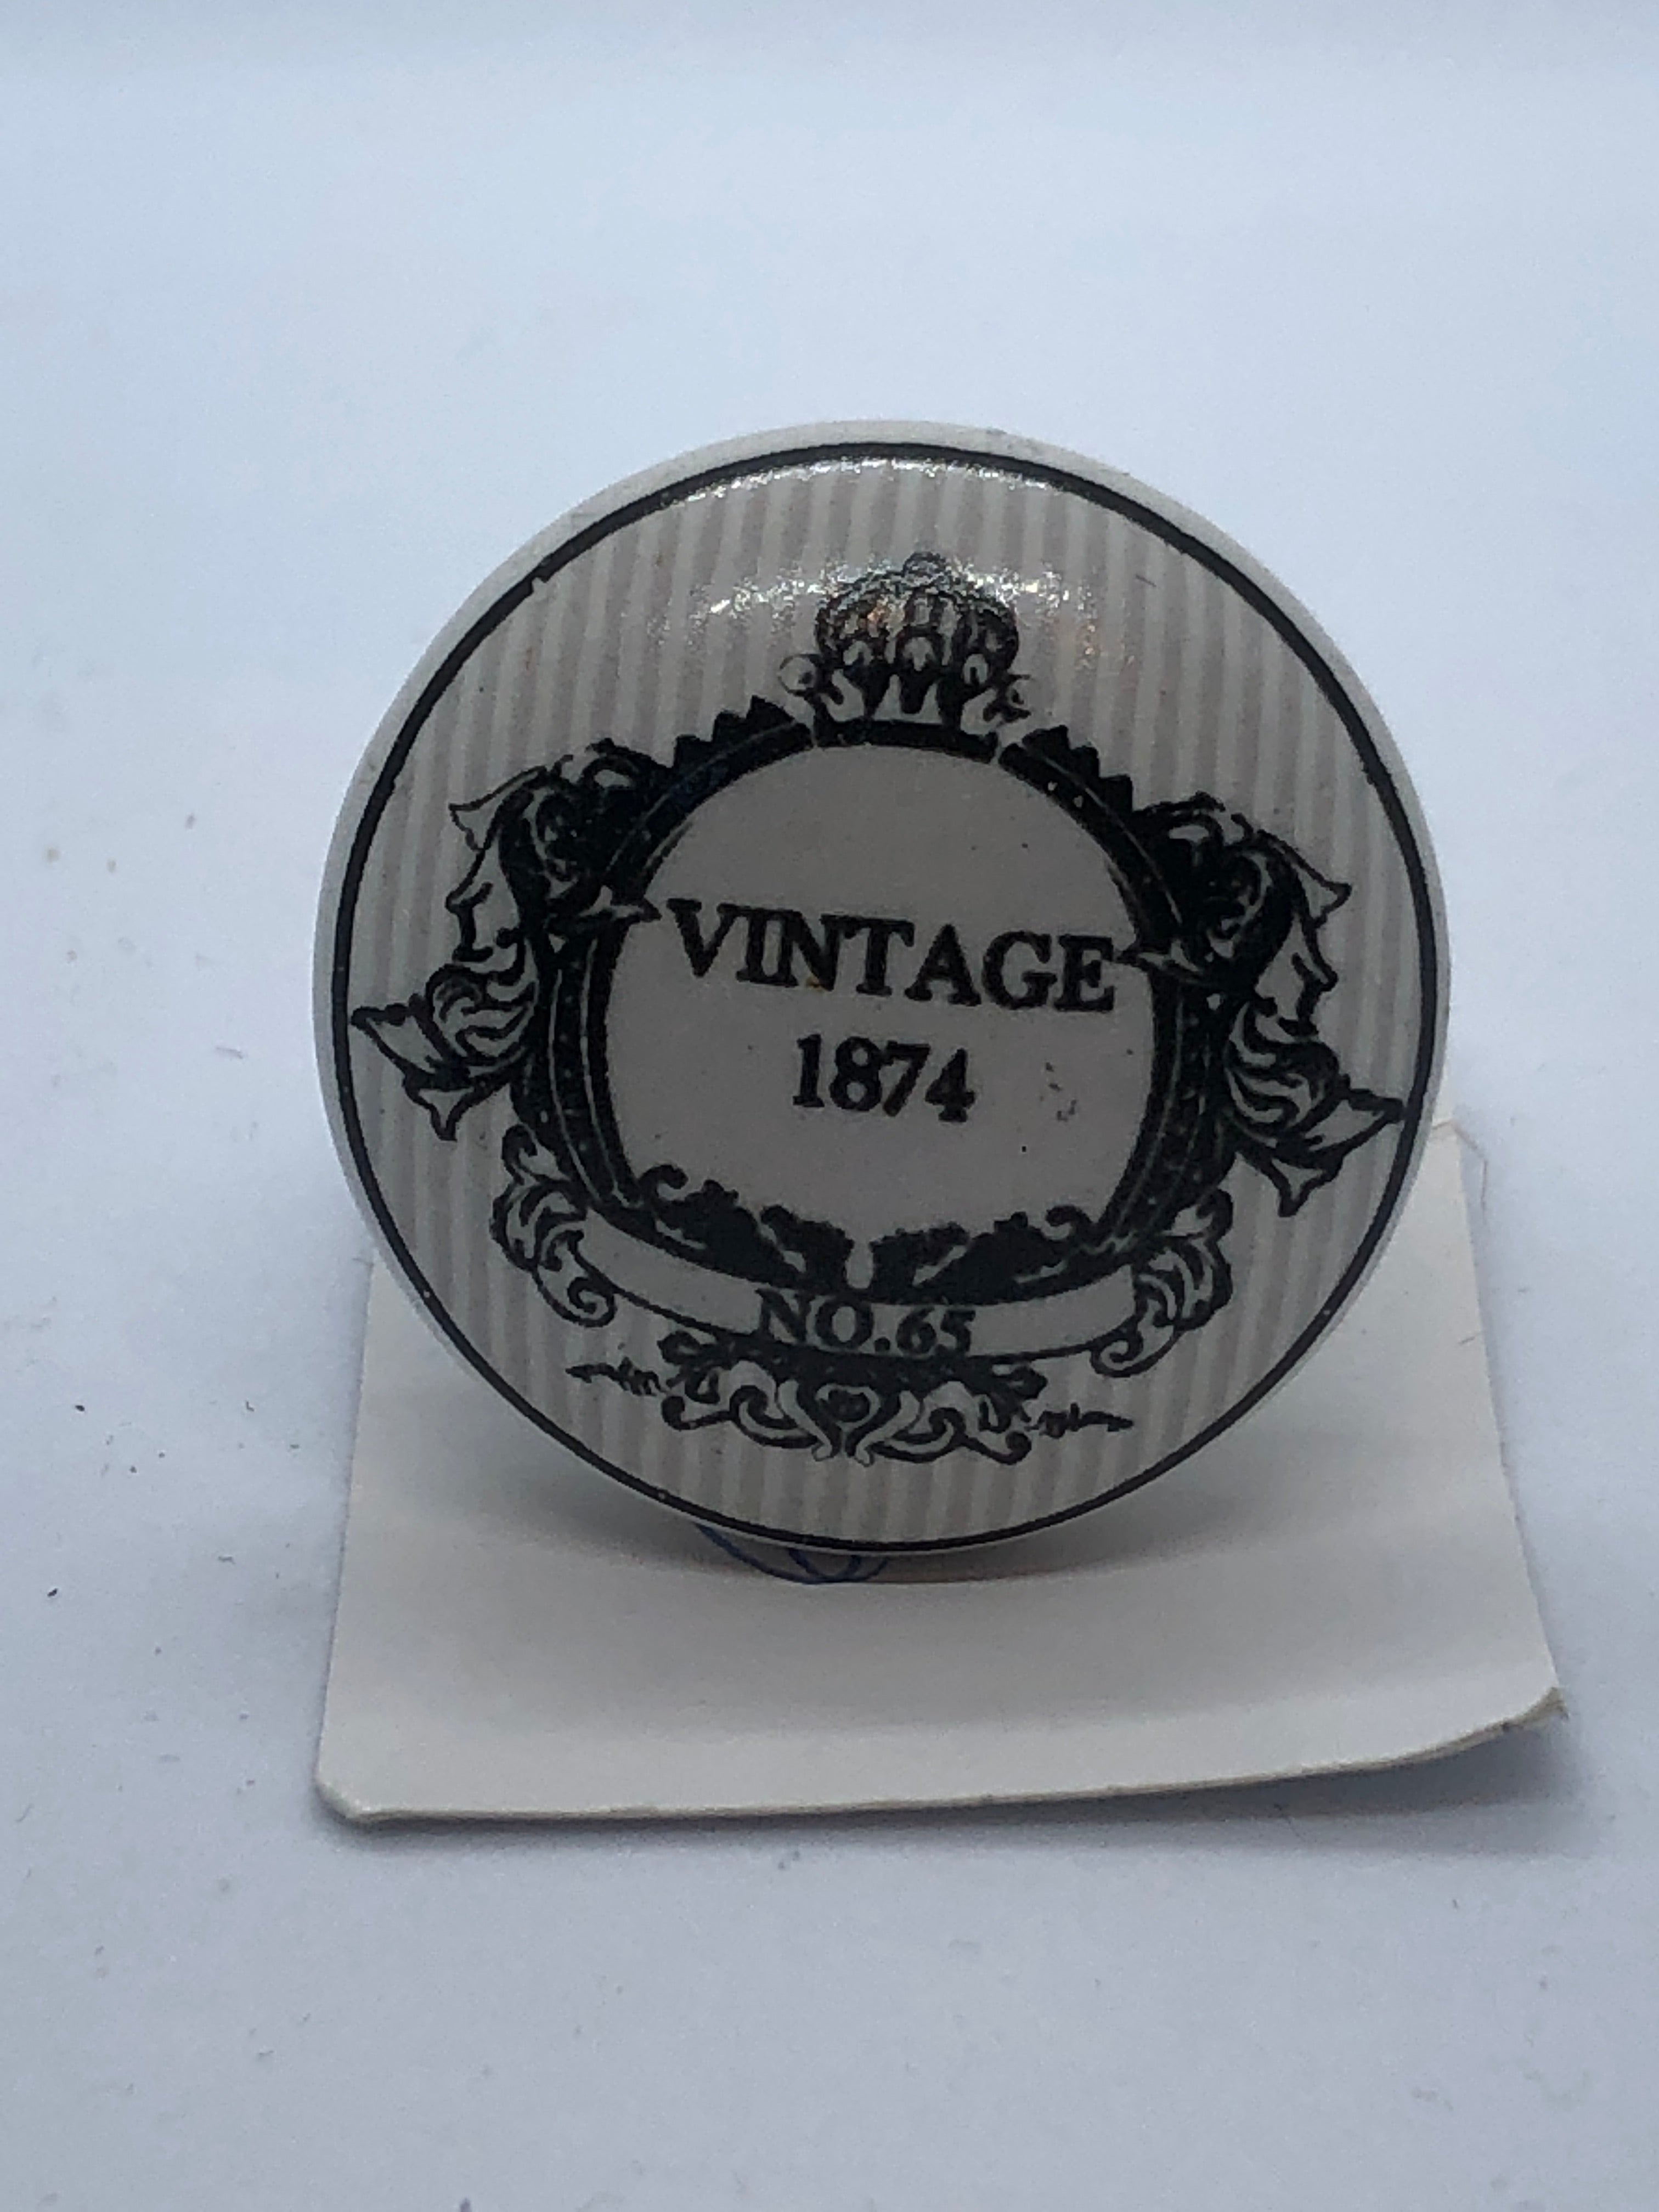 Antique vintage 1874 white knobs